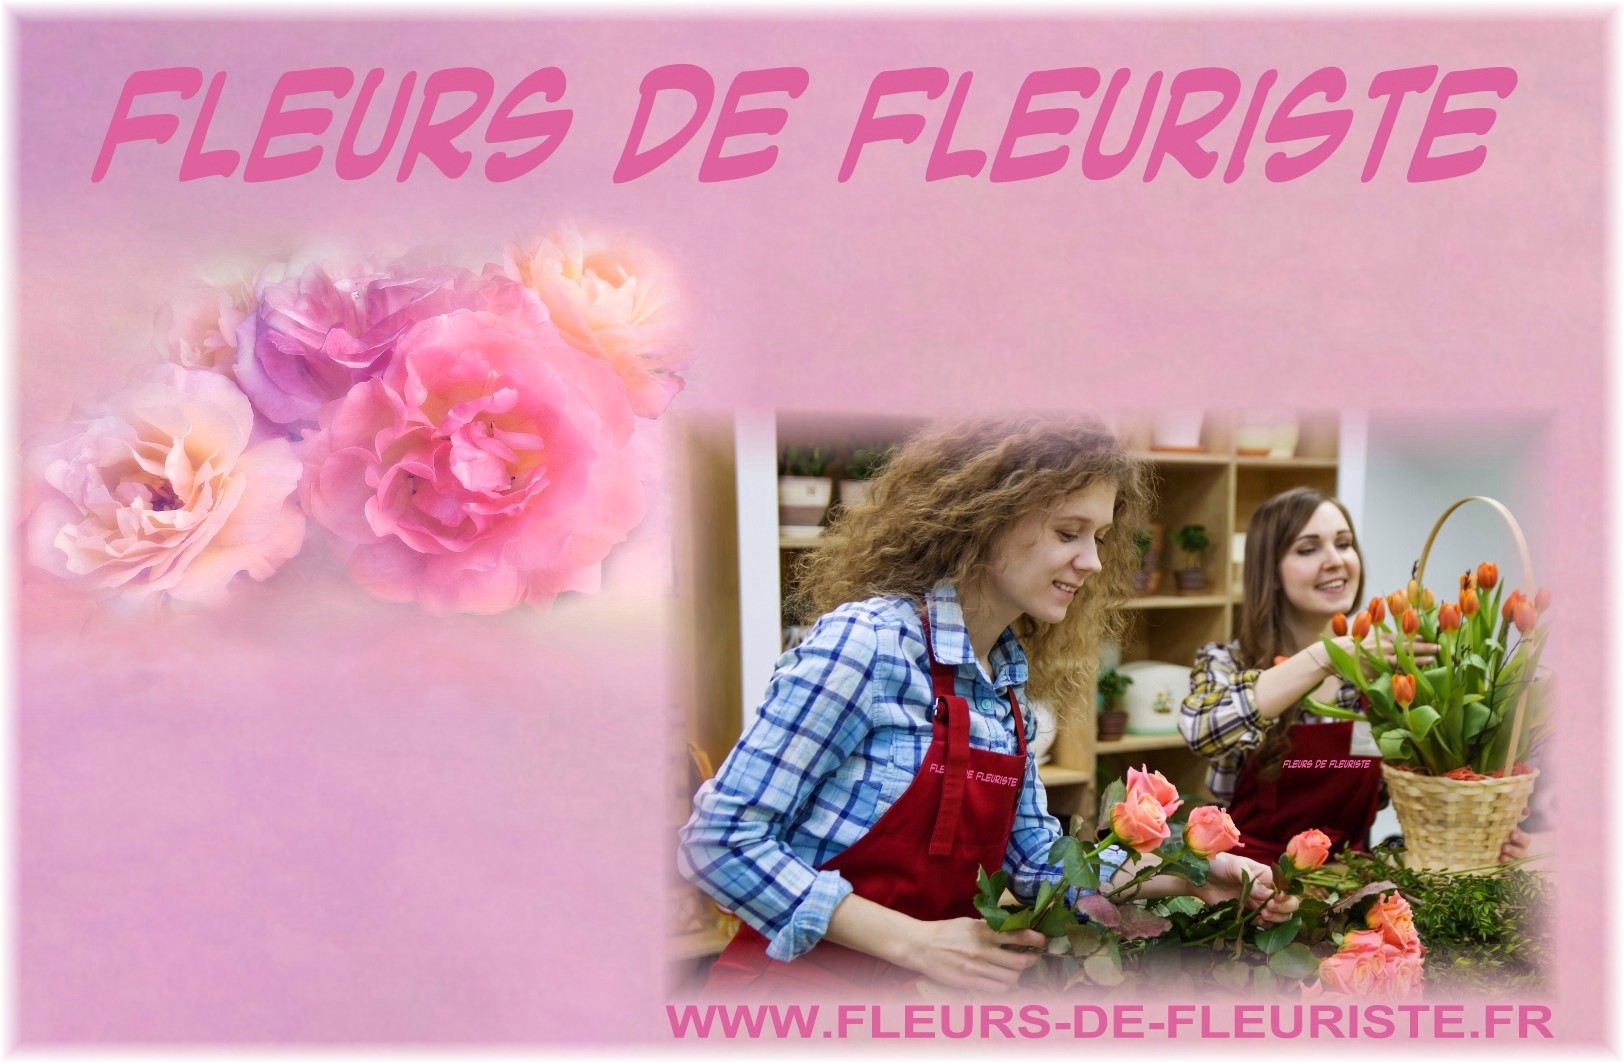 FLEURISTES - FLEURS DE FLEURISTE.